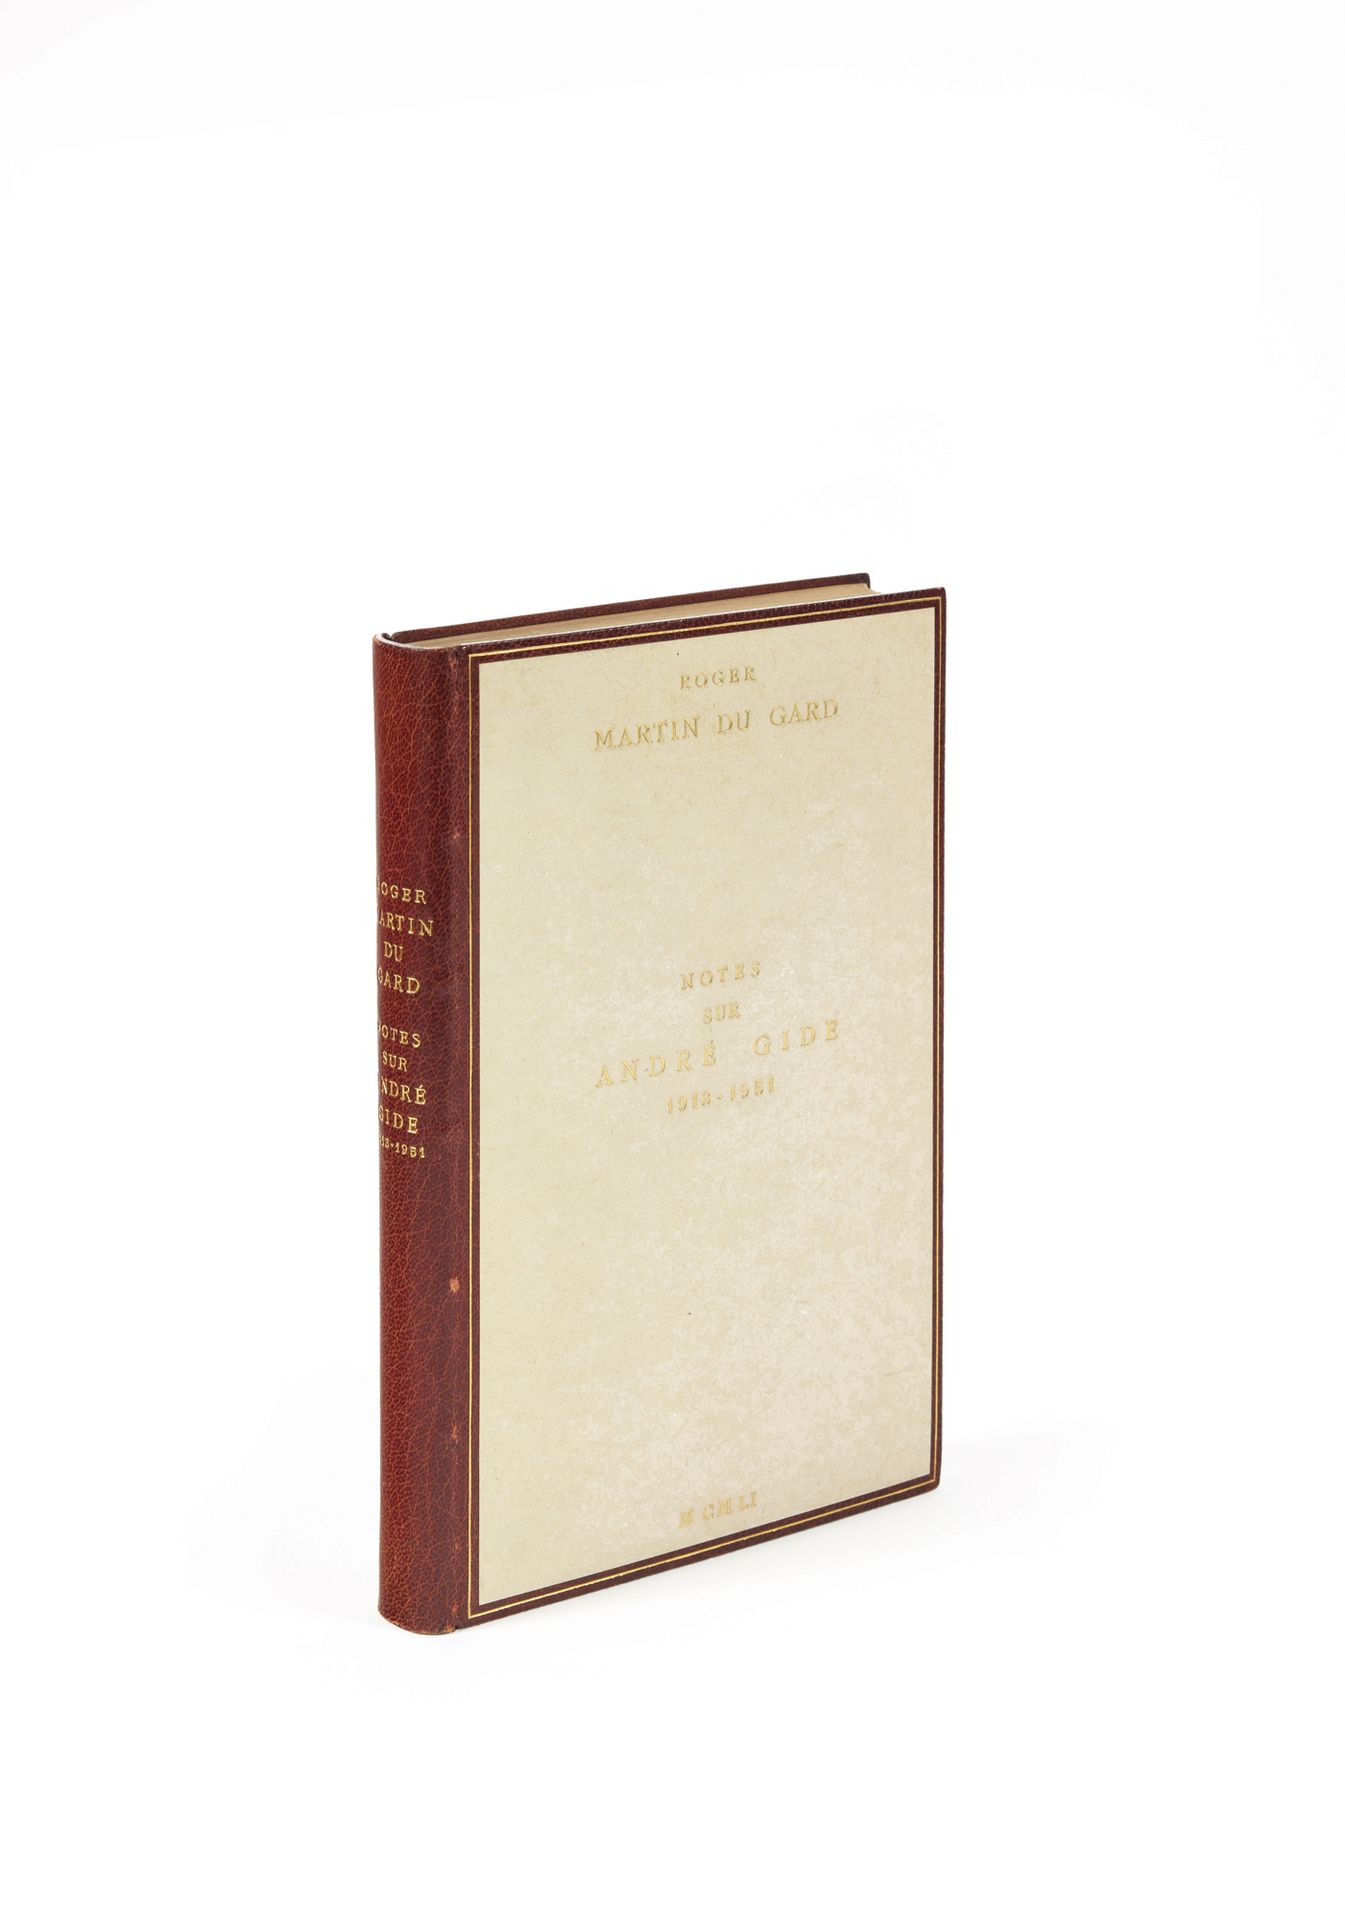 Martin du Gard, Roger Notes sur André Gide 1913-1951. Paris, Gallimard, 1951 ; i&hellip;